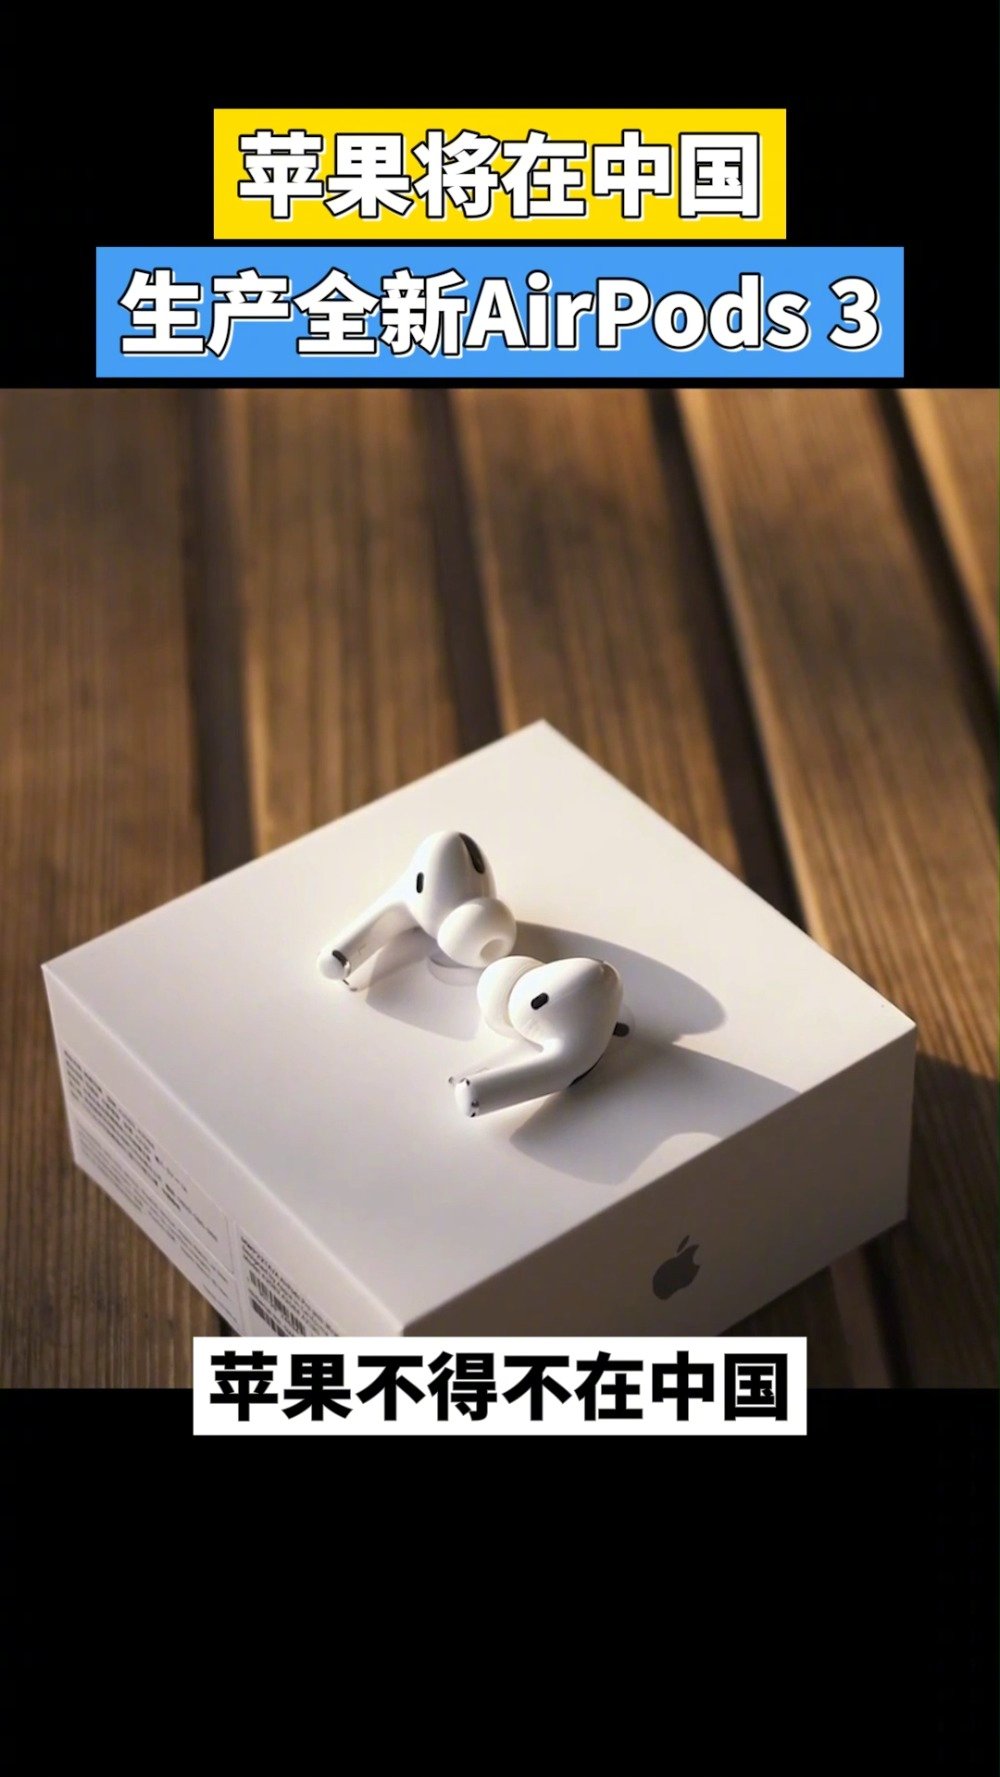 苹果将在中国生产AirPods3 受疫情影响